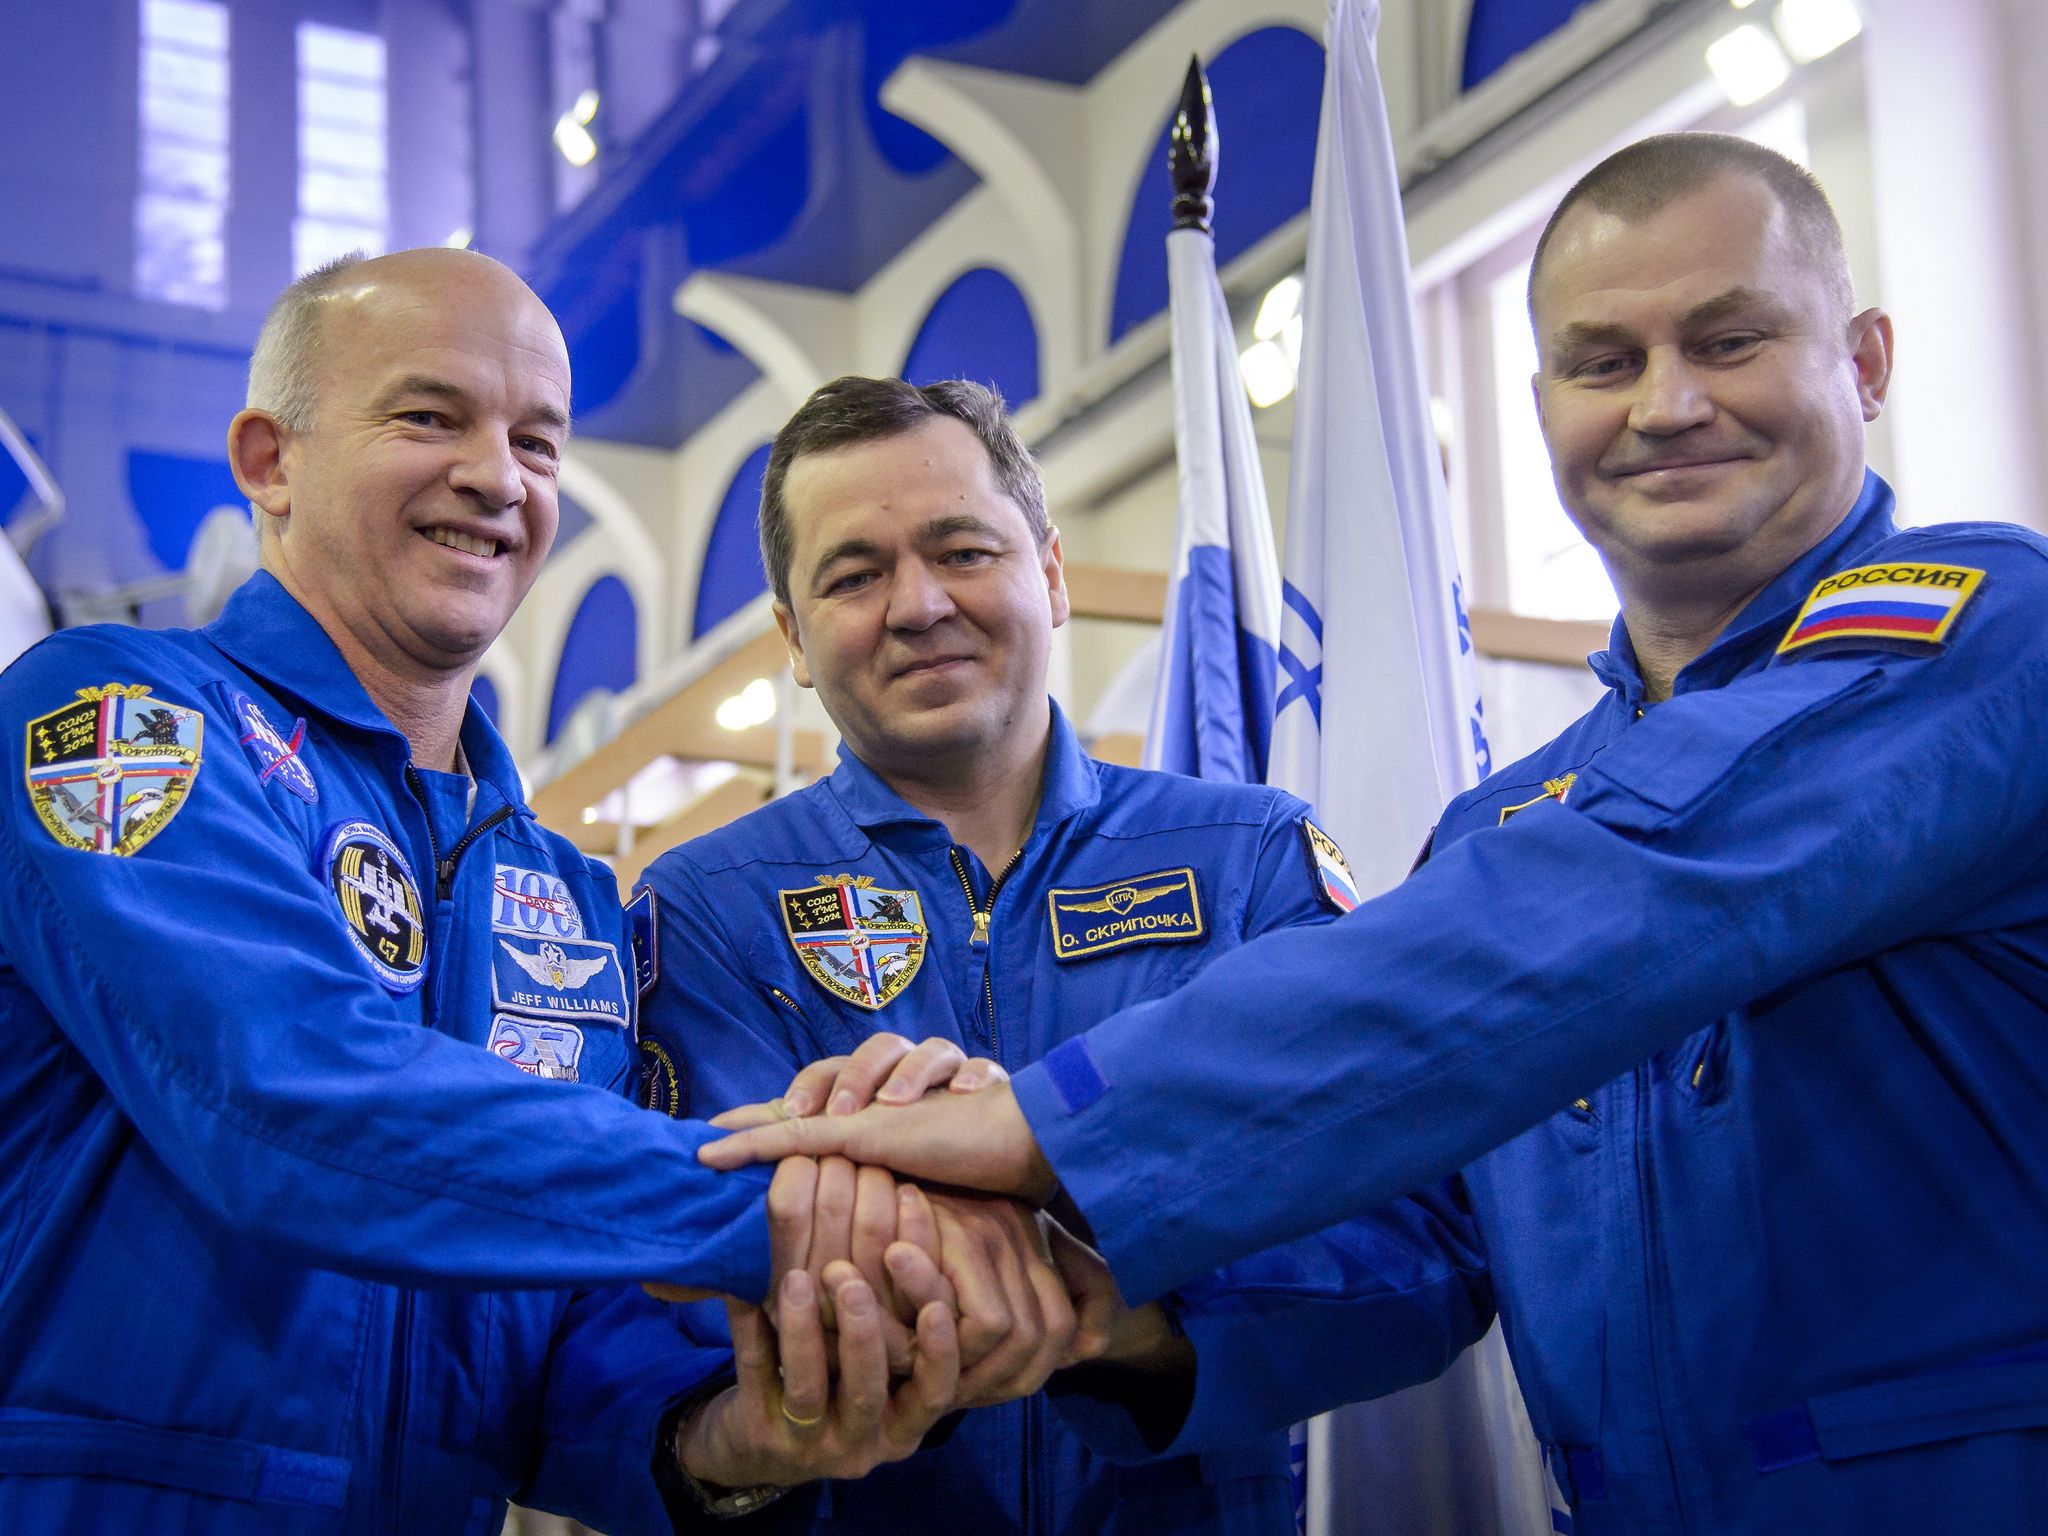 L'équipage du Soyouz TMA-20M, le 24 Février 2016, avant leur examen de qualification Soyouz. De gauche à droite : Jeff Williams (NASA), Oleg Skripochka et Alexei Ovchinin (Roscosmos). (Crédit photo : NASA/Bill Ingalls)